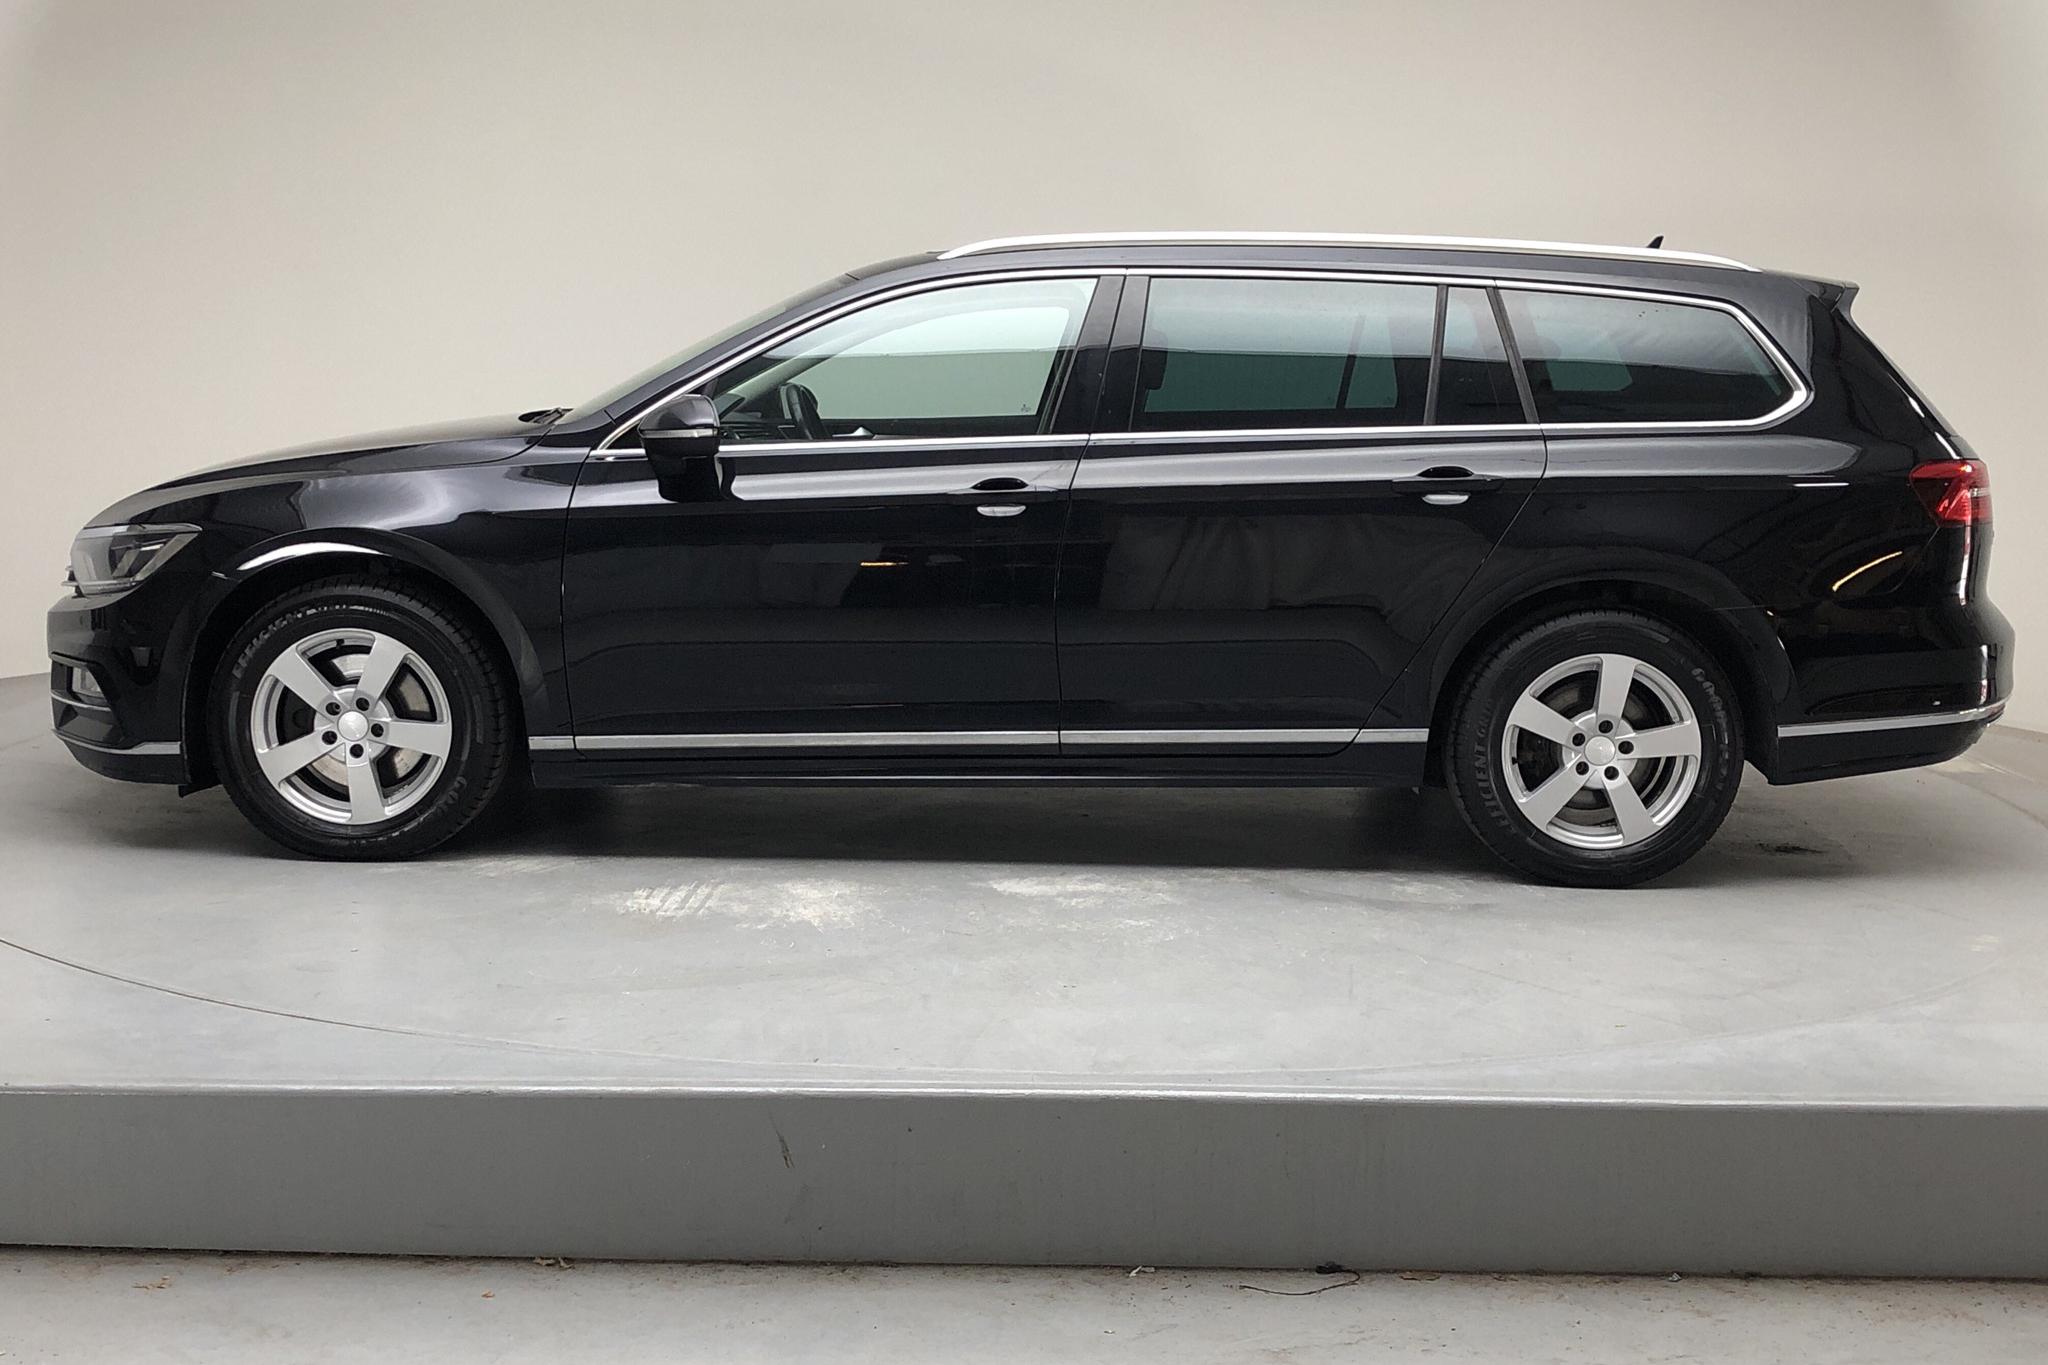 VW Passat 2.0 TDI Sportscombi (190hk) - 11 556 mil - Manuell - svart - 2017